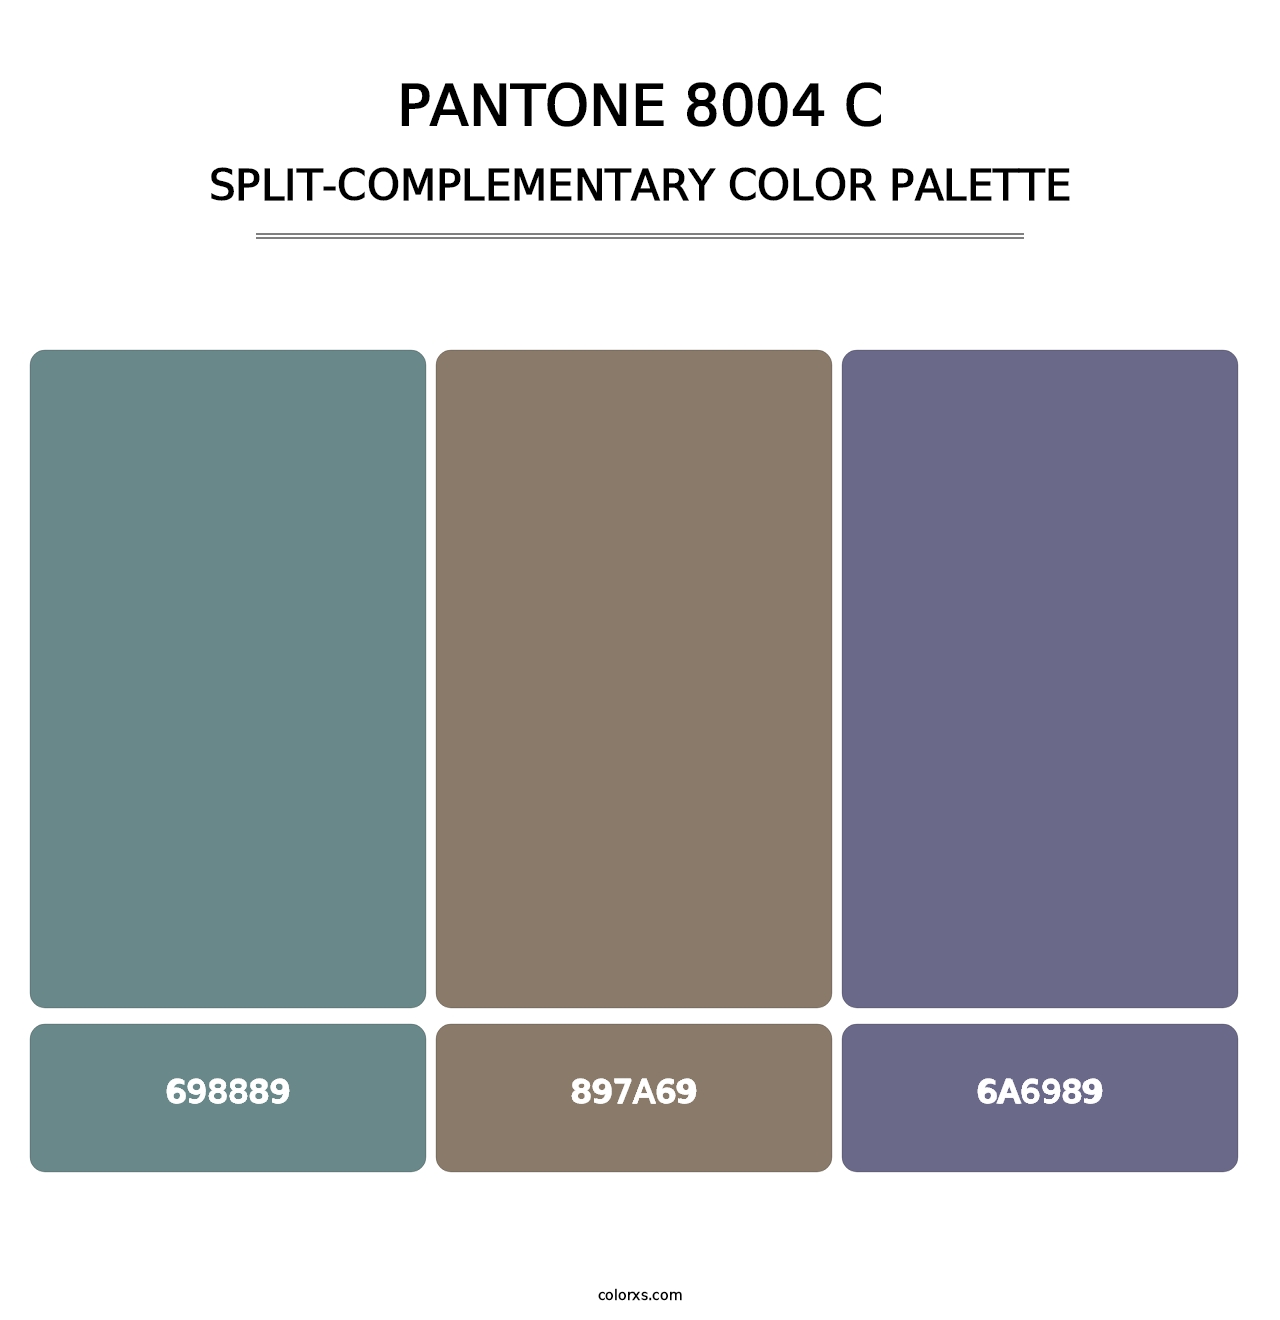 PANTONE 8004 C - Split-Complementary Color Palette